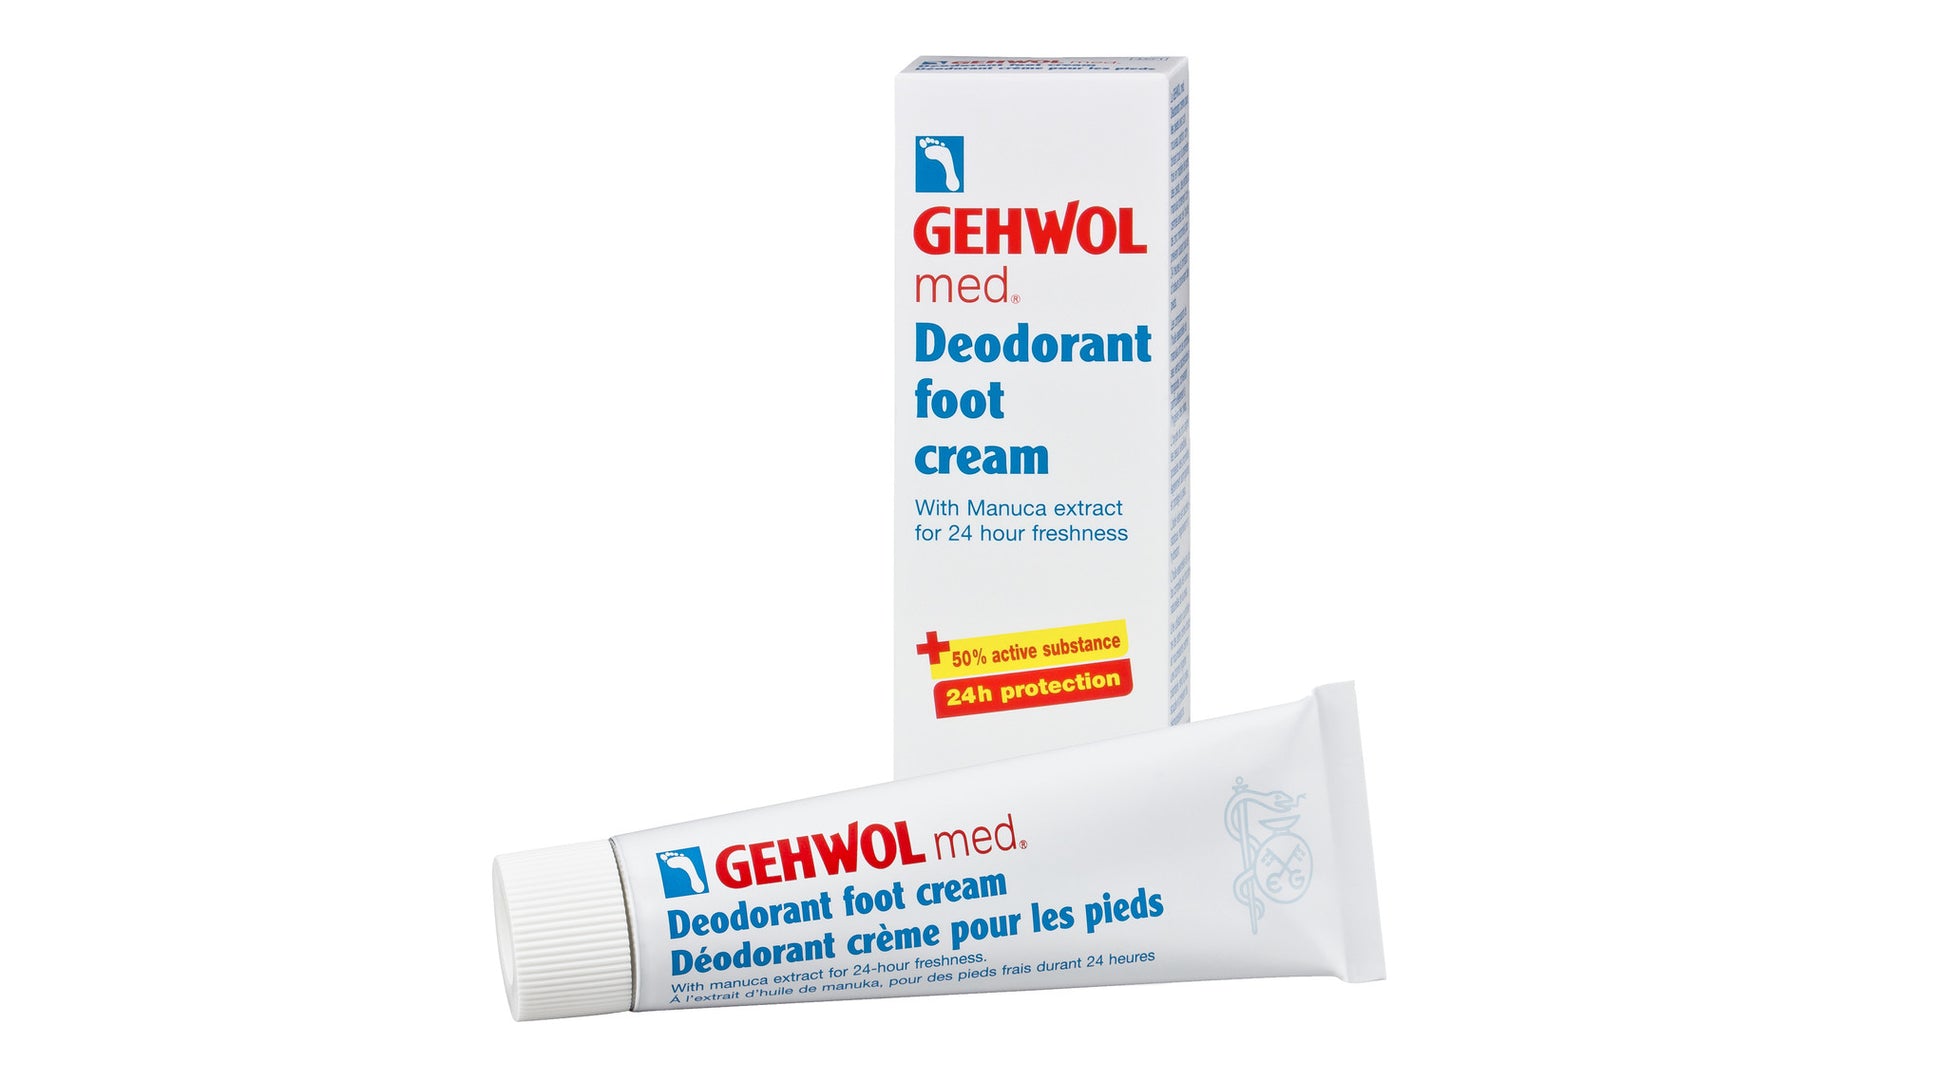 Gehwol Med - Déodorant crème pour les pieds - #moncoachbeaute